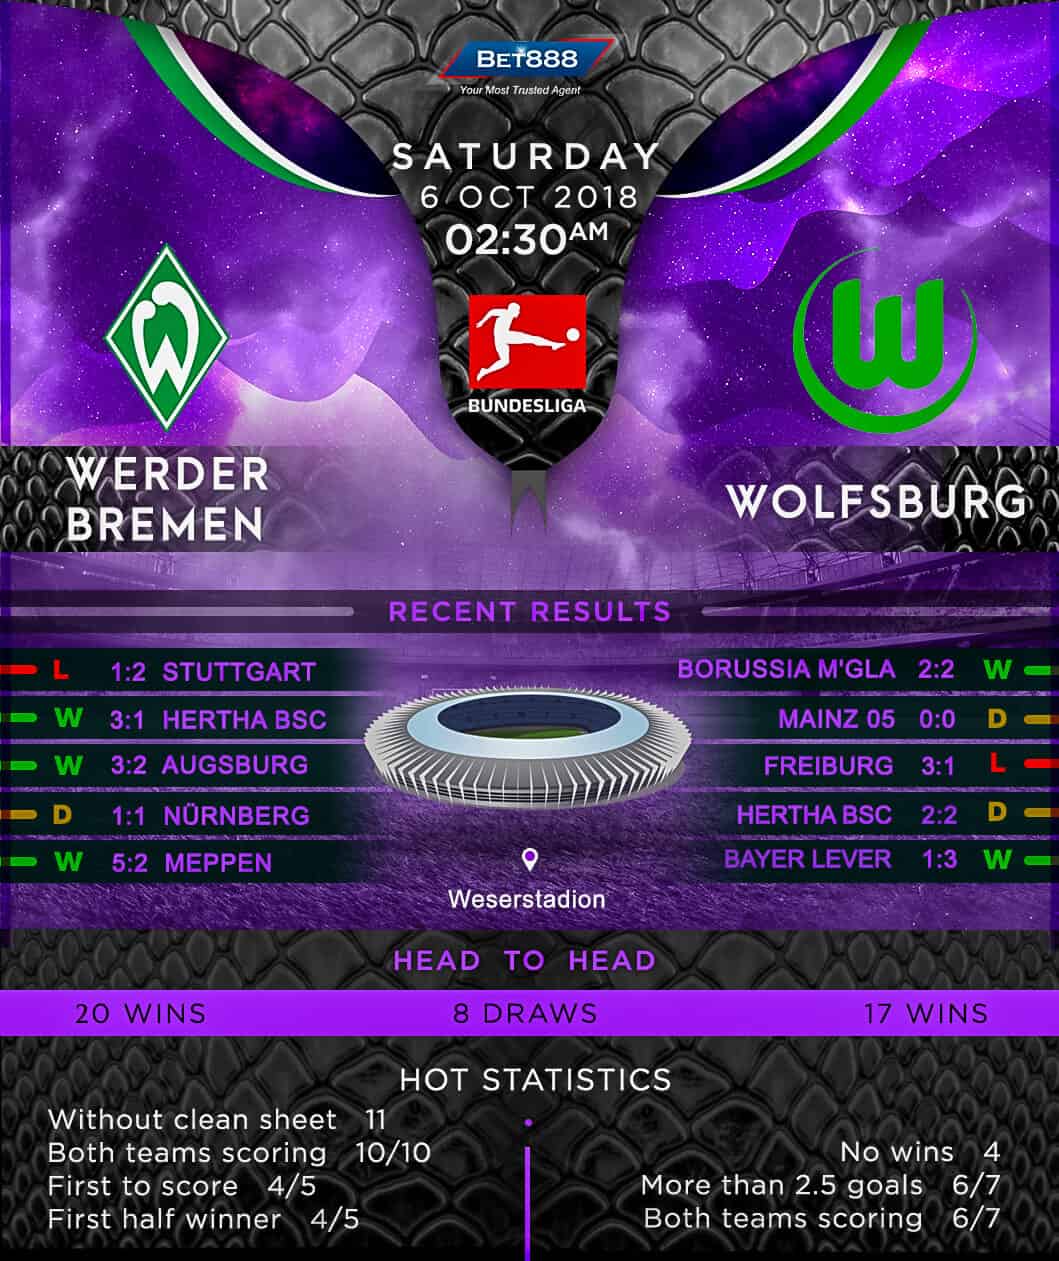 Werder Bremen vs Wolfsburg 06/10/18